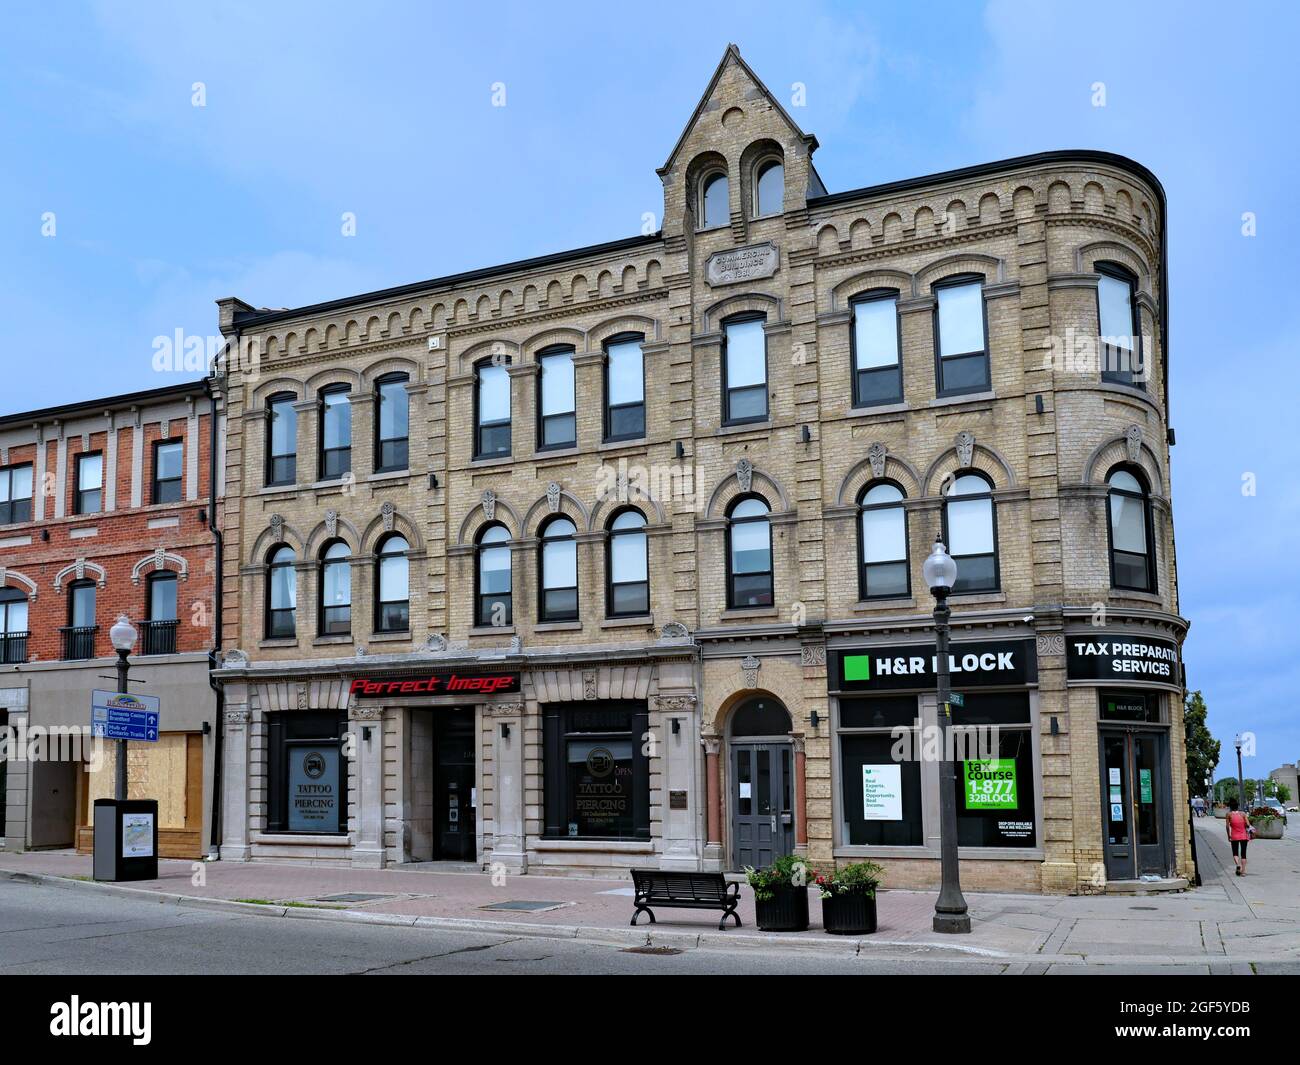 Ontario, Kanada - 13. August 2021: Alte Handelsgebäude aus dem 19. Jahrhundert geben der Innenstadt ein Gefühl von Kontinuität und Geschichte. Stockfoto